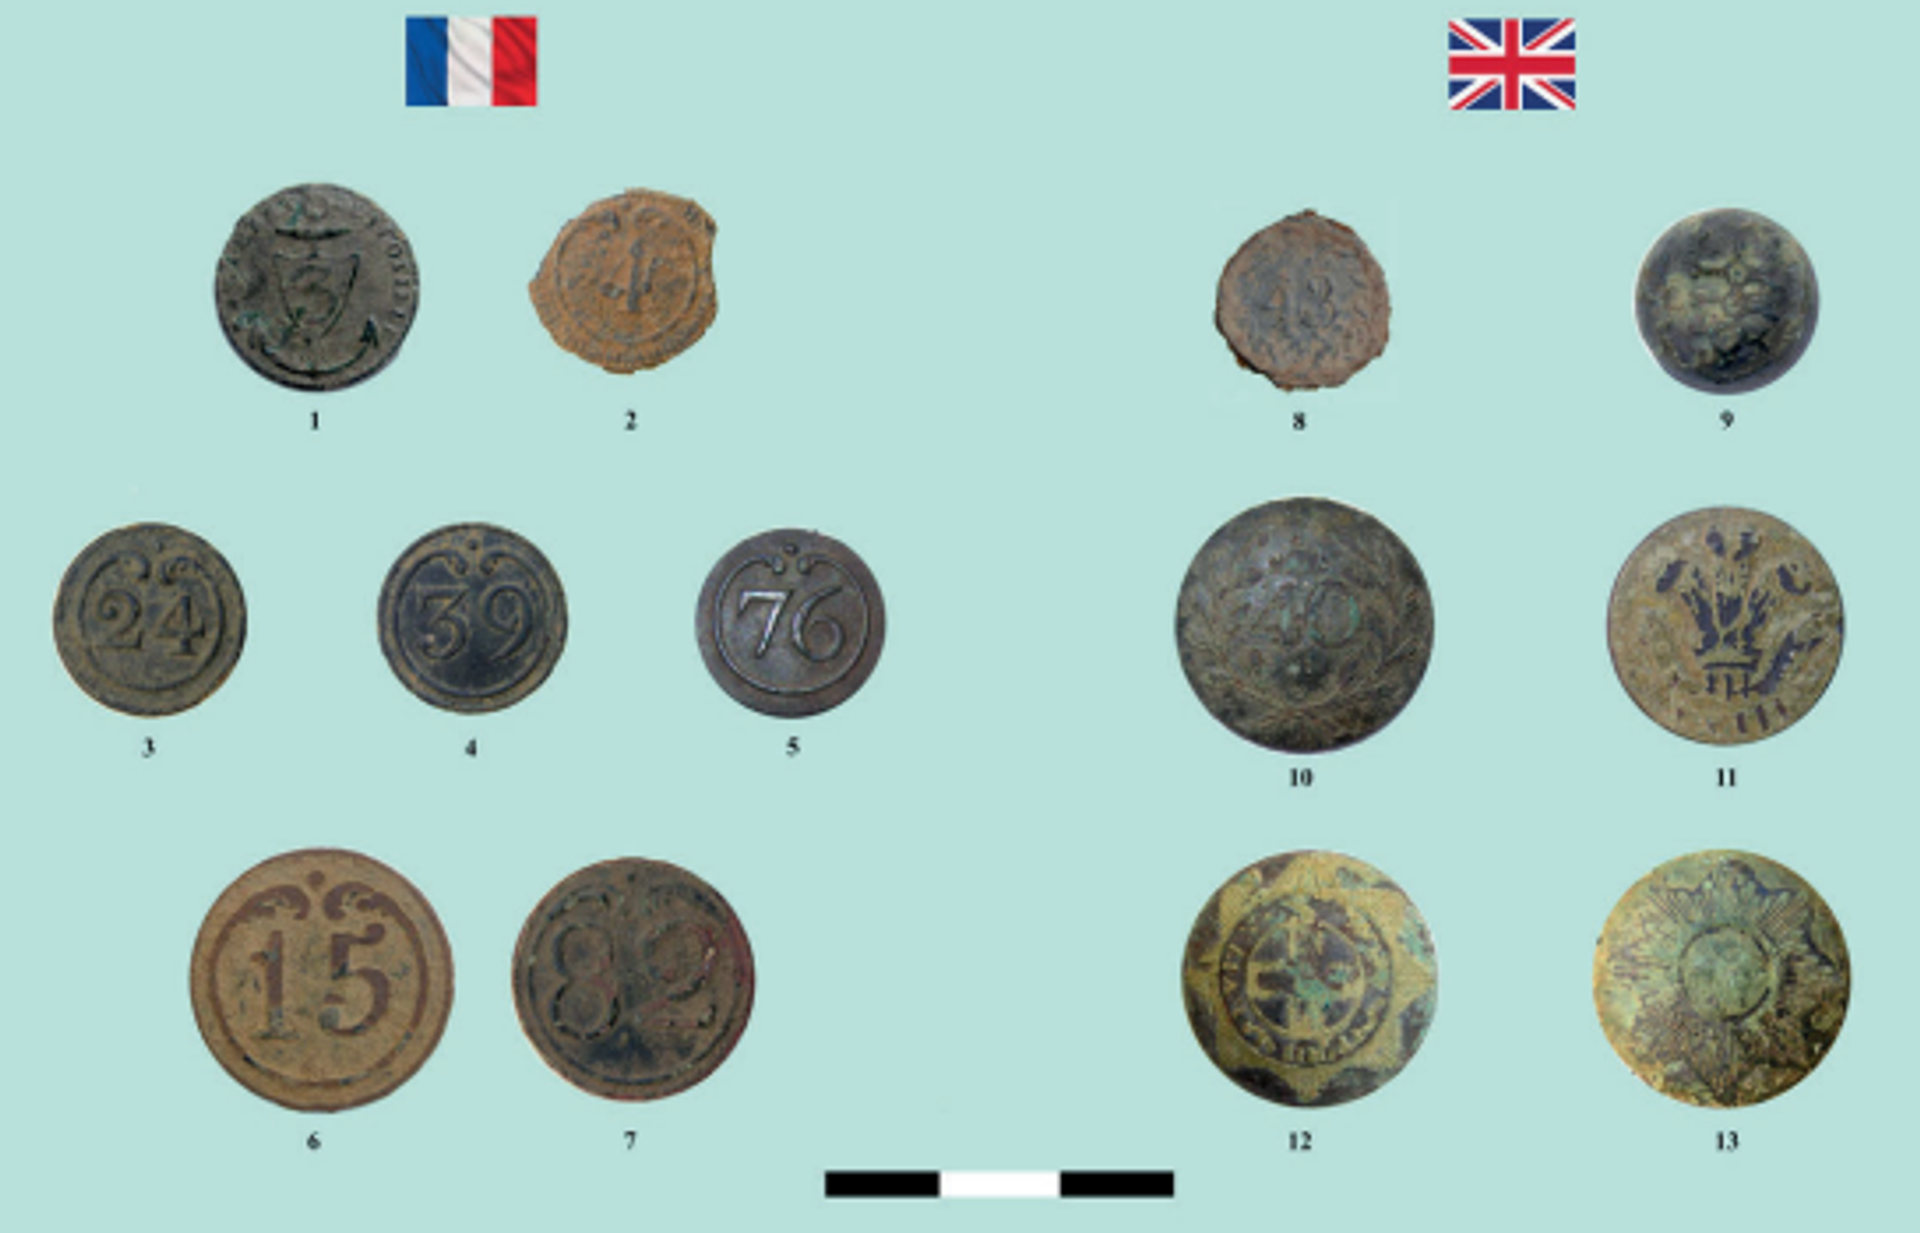 Botones de uniformes franceses y británicos  - Sputnik Mundo, 1920, 29.07.2021